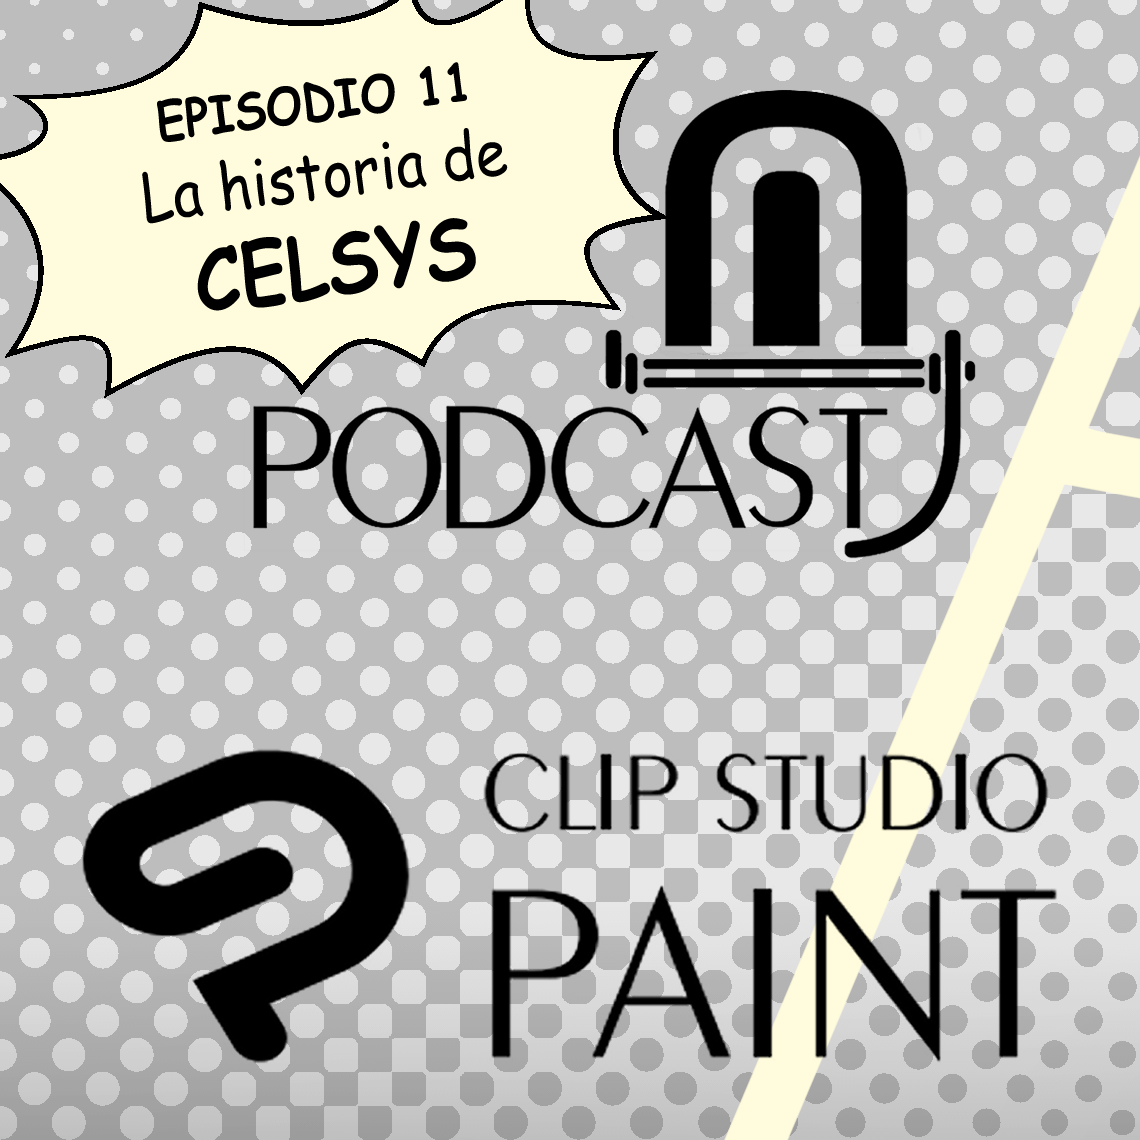 CSP episodio 11. La Historia de CELSYS, los creadores de CLIP STUDIO PAINT